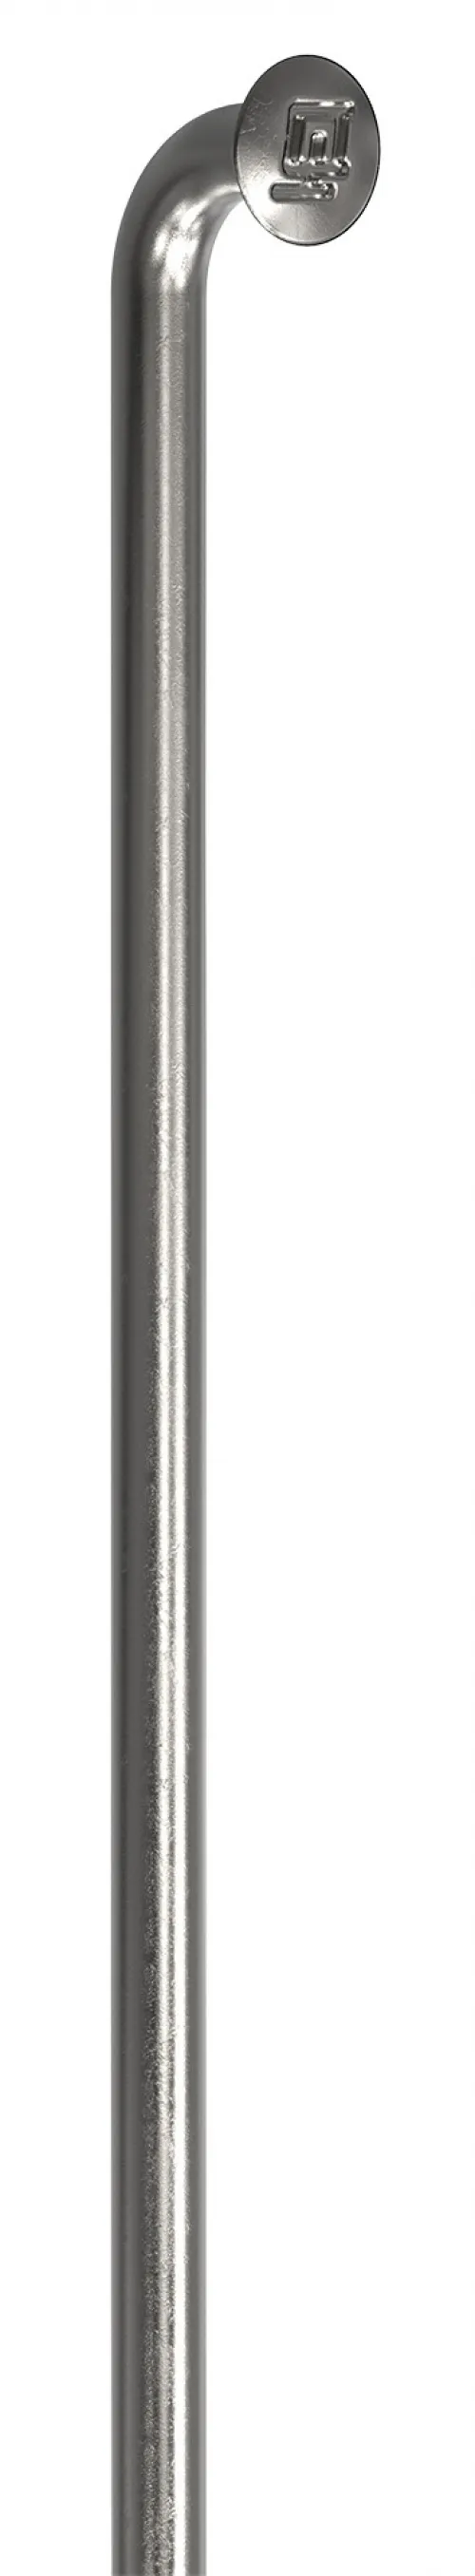 Спицы DT Swiss Champion (J-bend) 2.0mm x 135mm silver 100шт